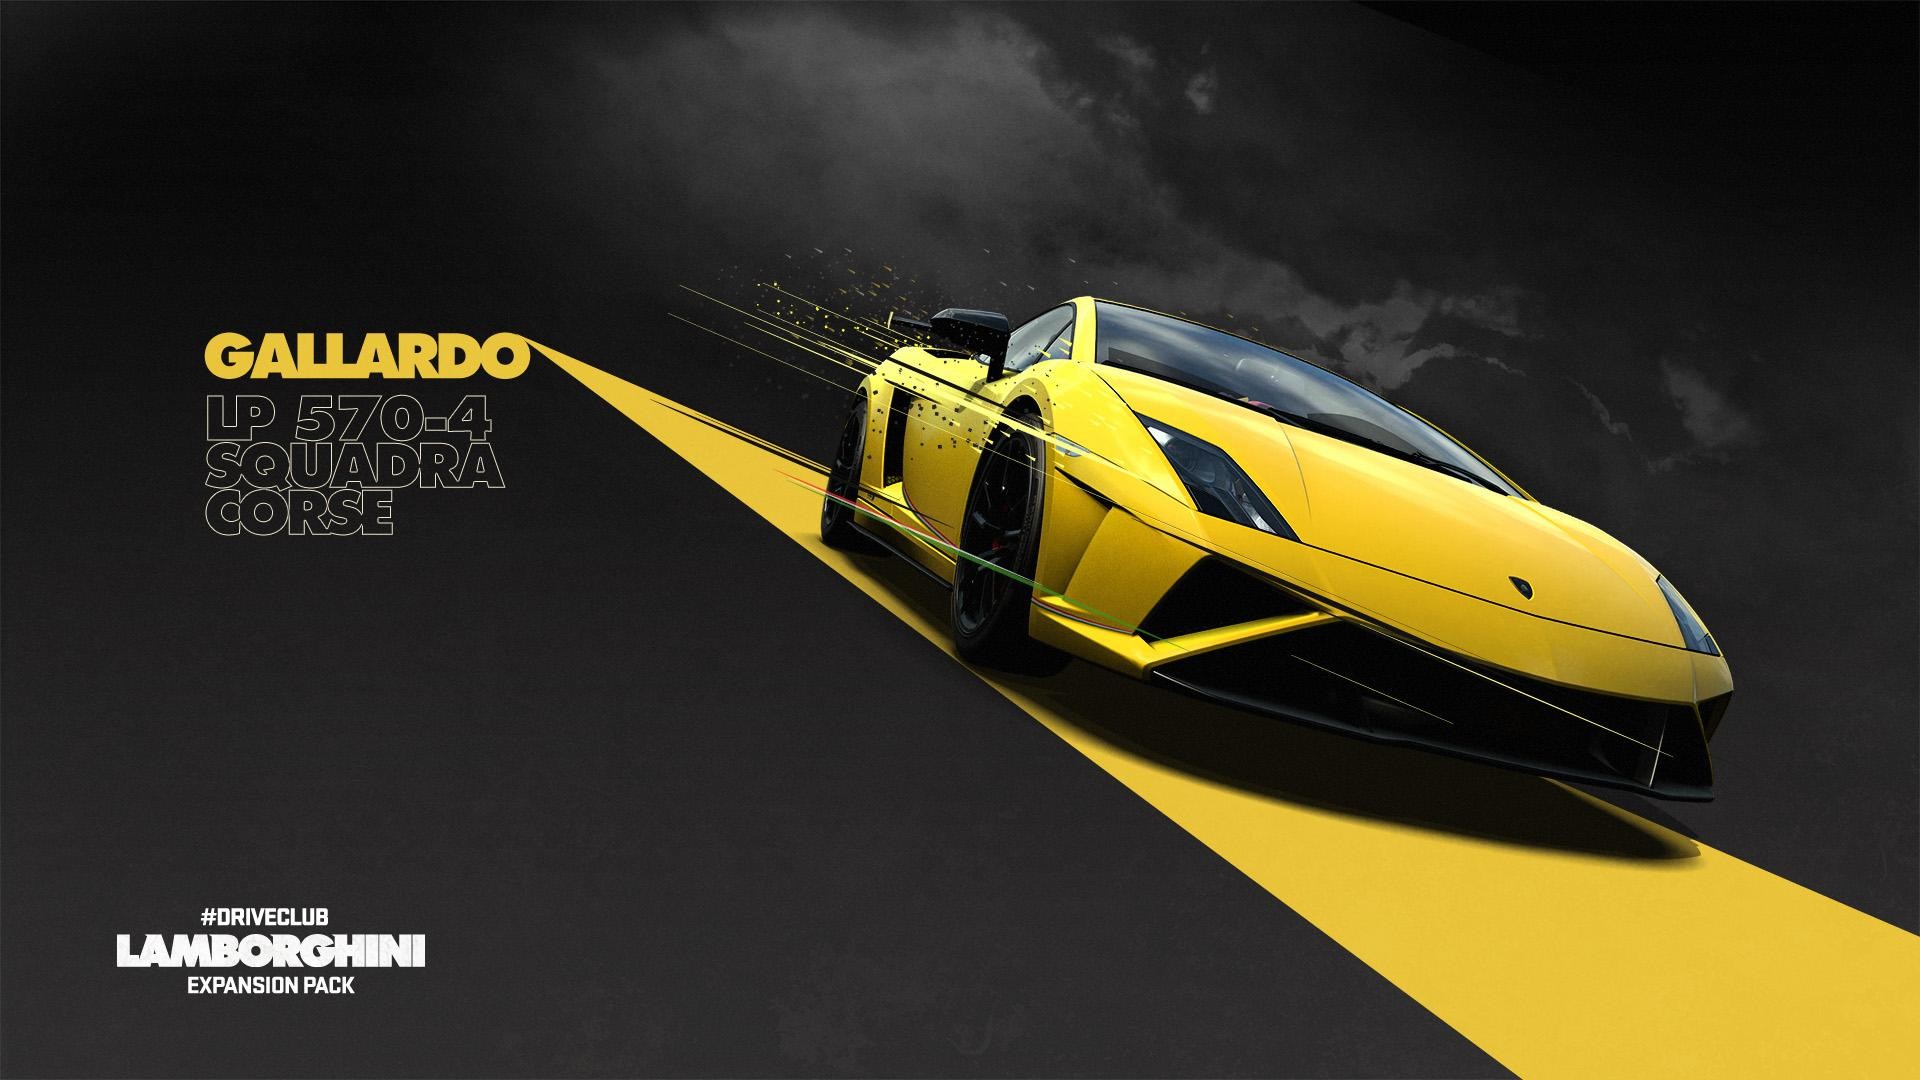 Lamborghini, Lamborghini Gallardo, Driveclub, Video Games, Yellow Cars Wallpaper